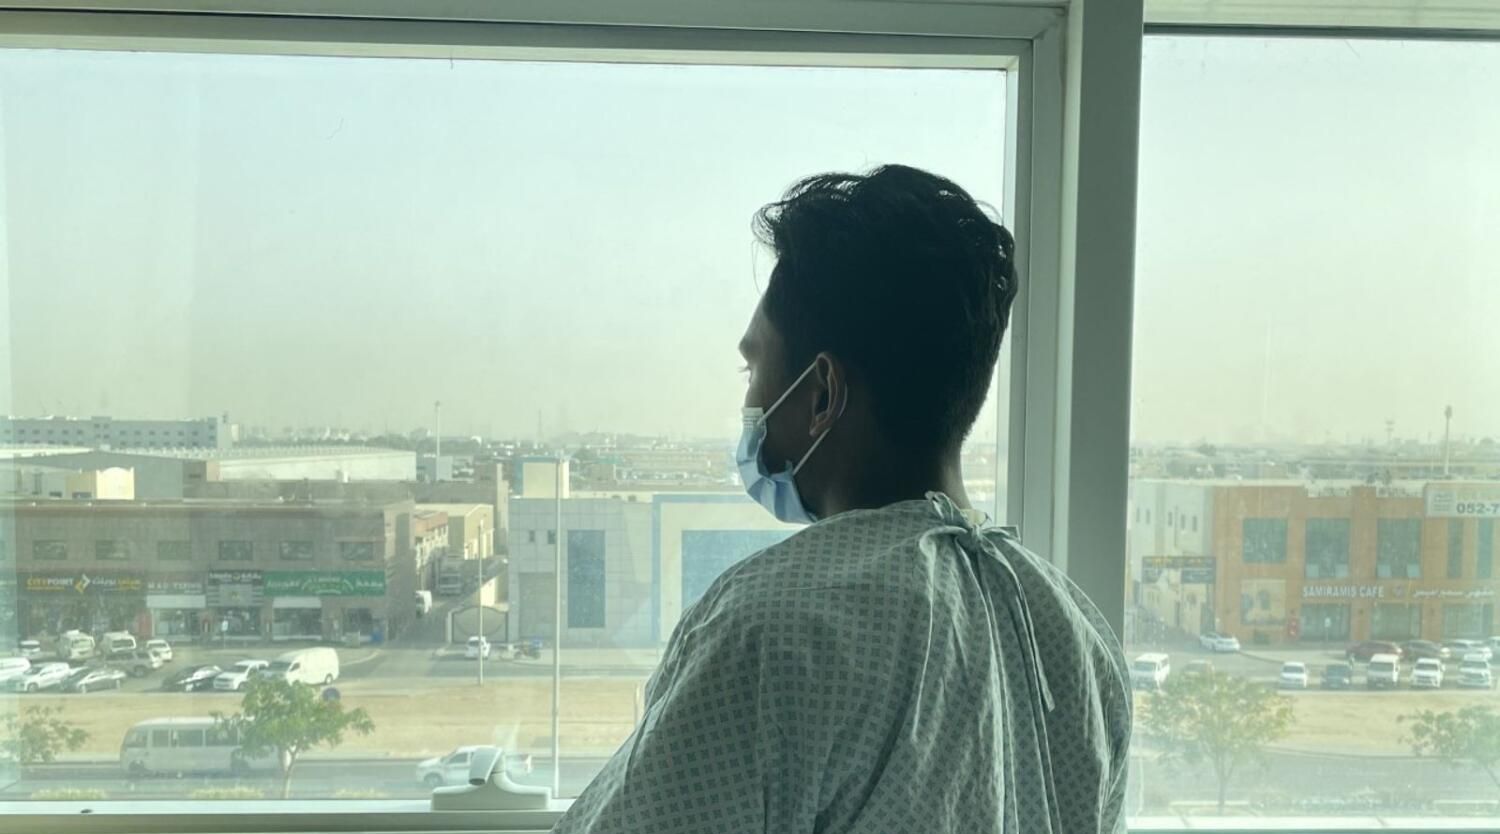 الإمارات العربية المتحدة: تشخيص مغترب باكستاني بمرض خطير بعد خضوعه للفحص الطبي المطلوب للتأشيرة